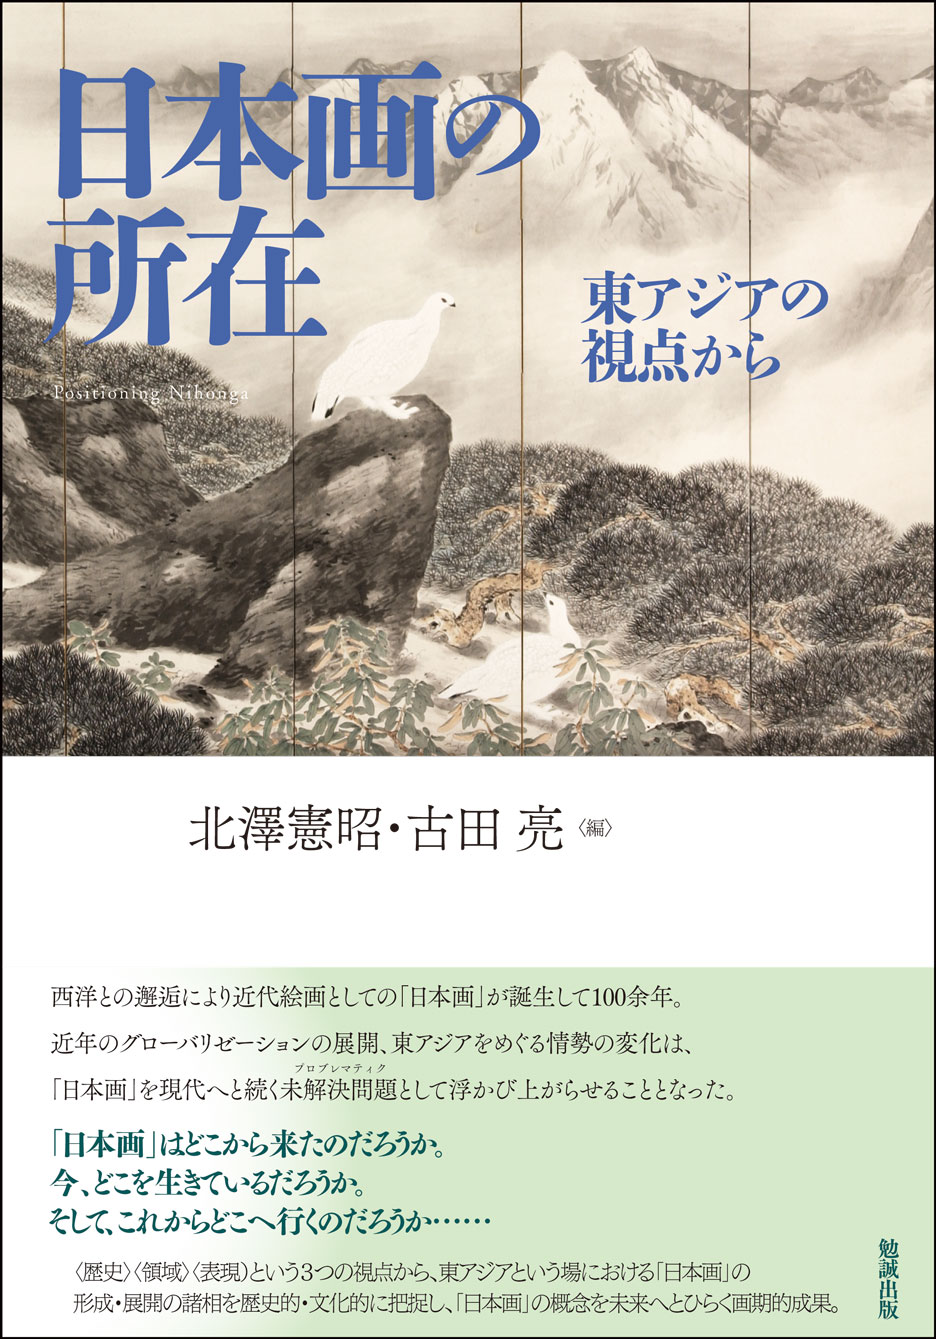 北澤憲昭『アヴァンギャルド以降の工芸』、美学出版、2003年。